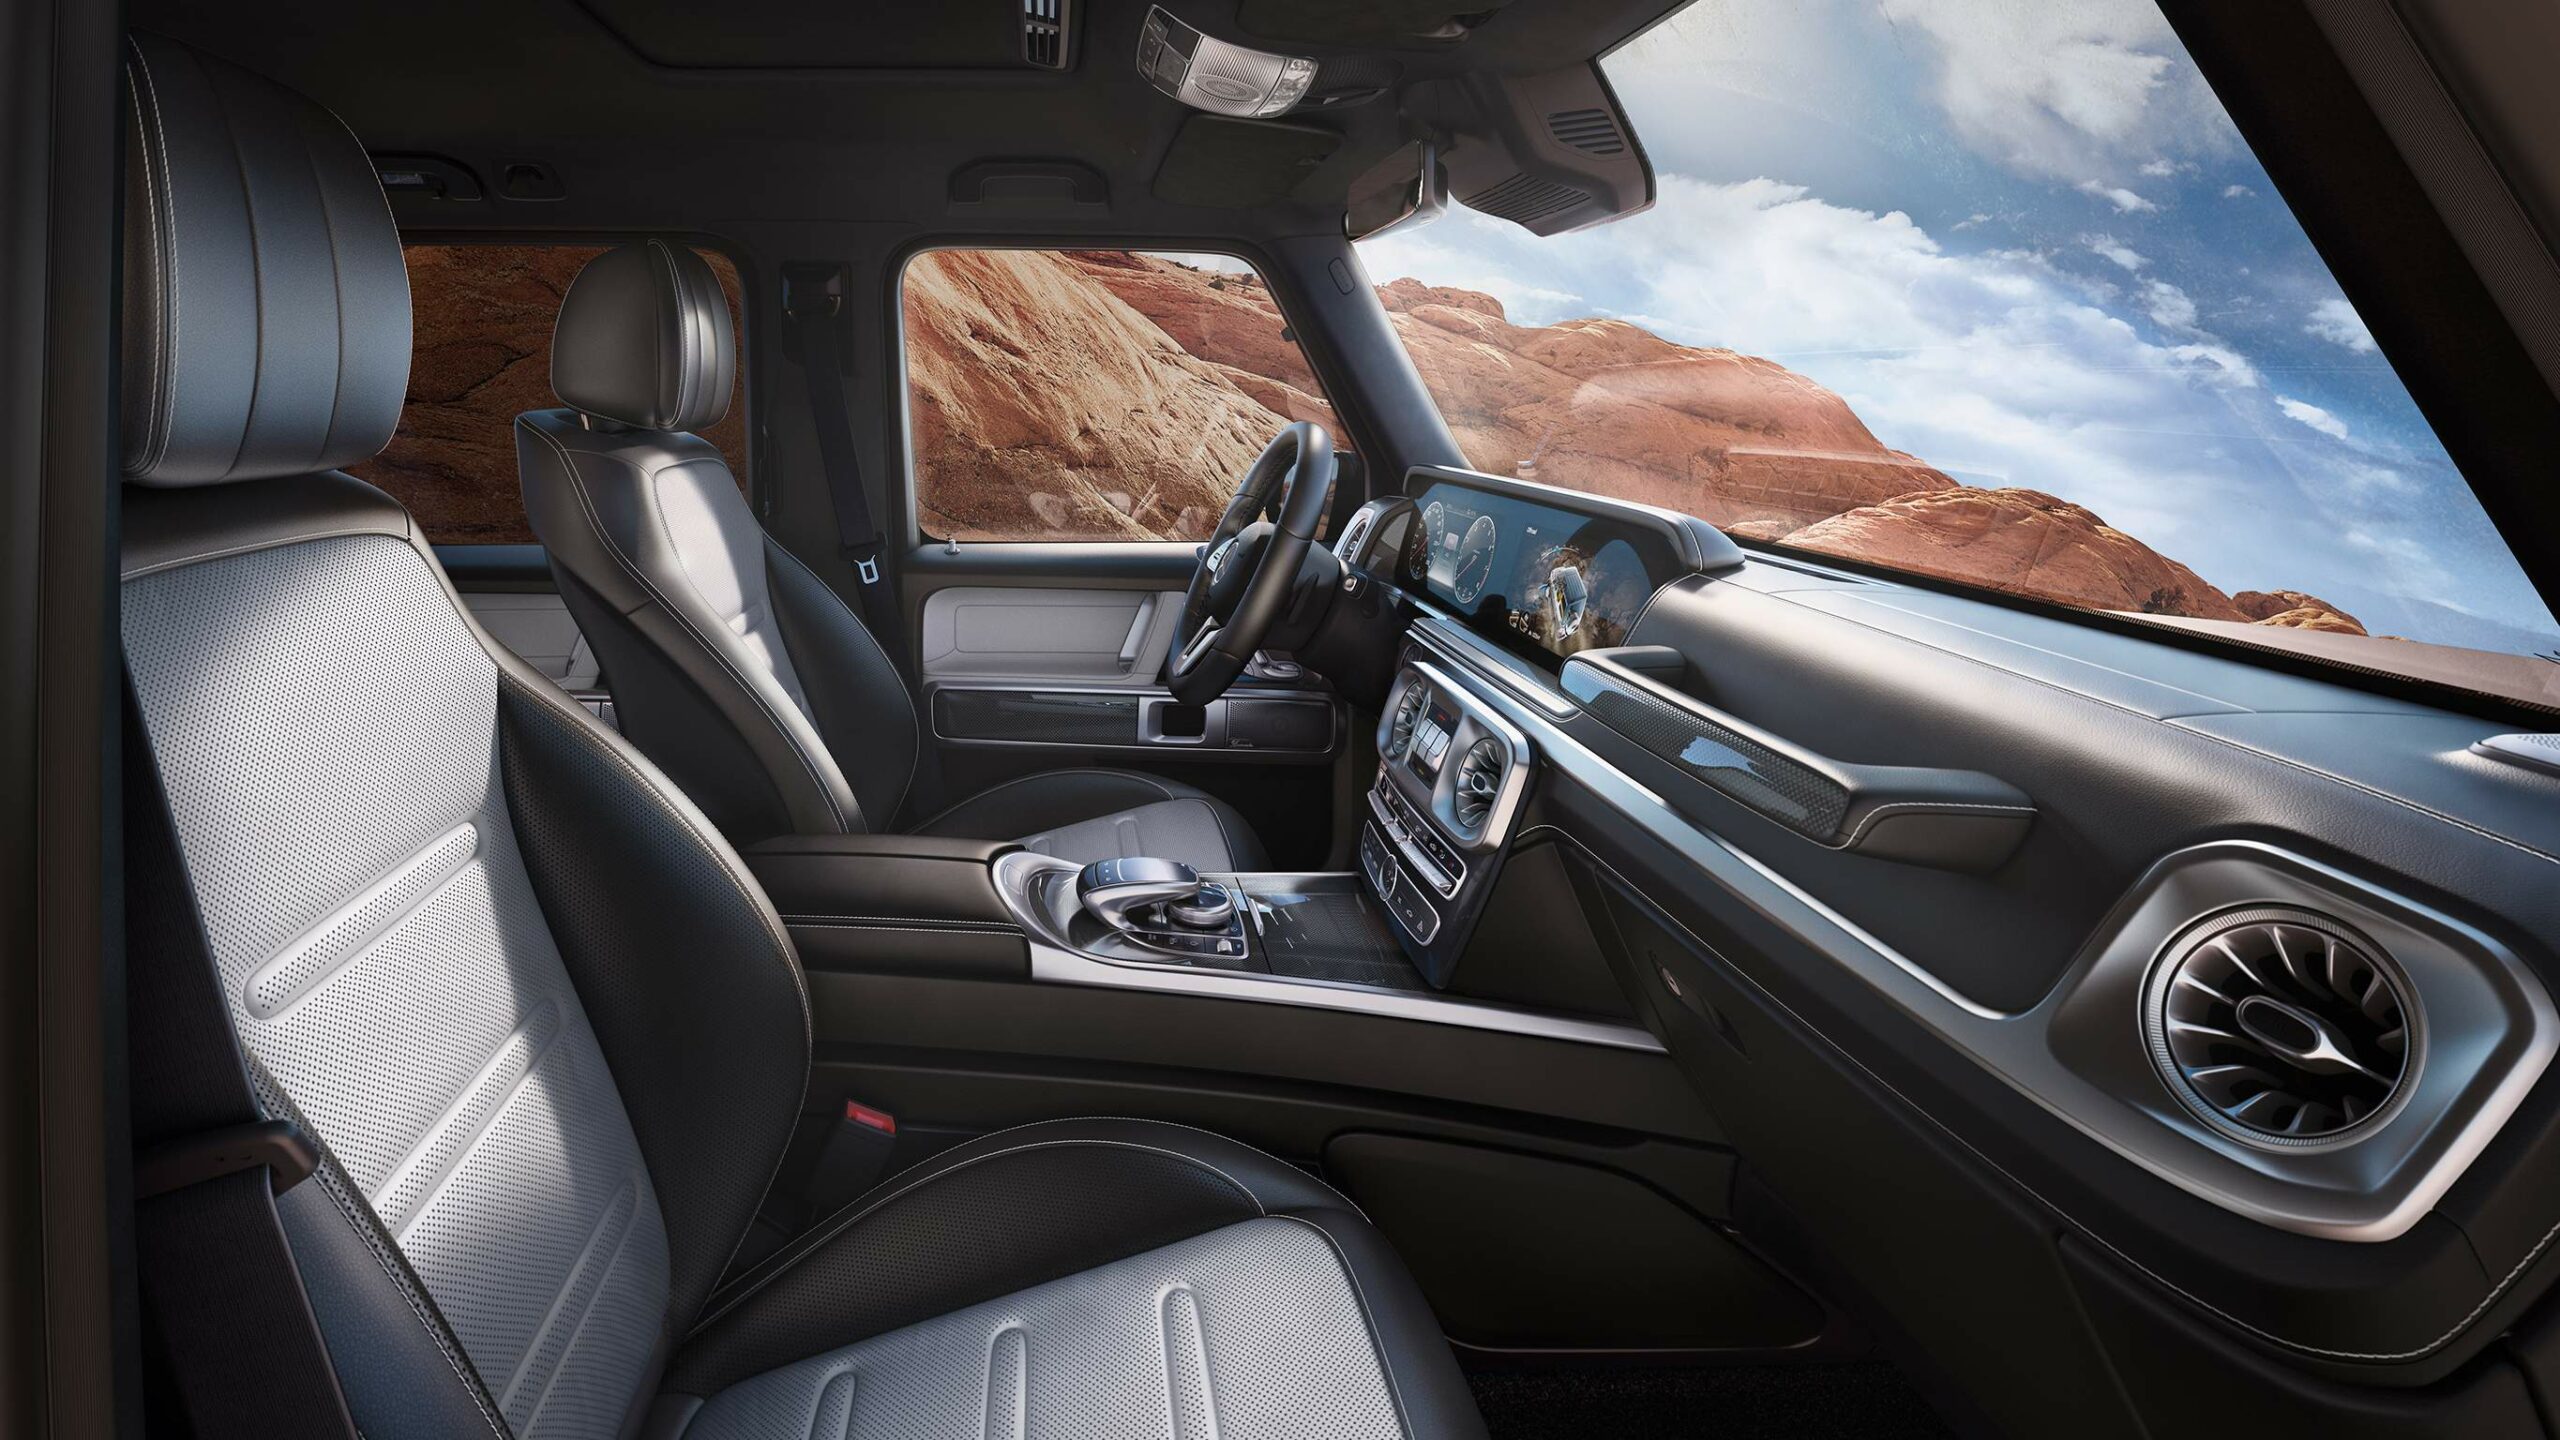 Lujo y confort dentro de la iconica Clase G SUV de Mercedes-Benz